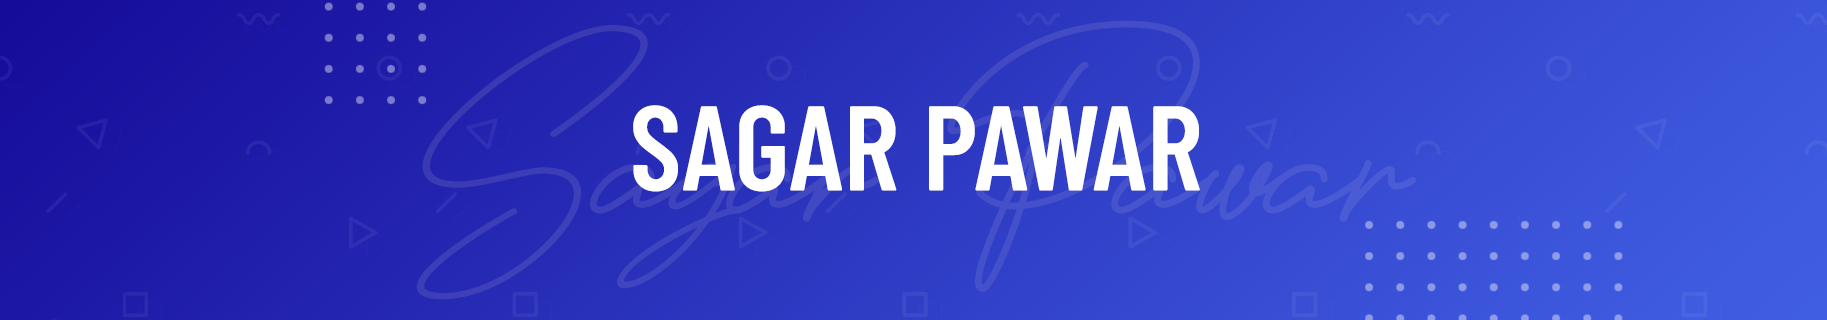 Sagar Pawars profilbanner